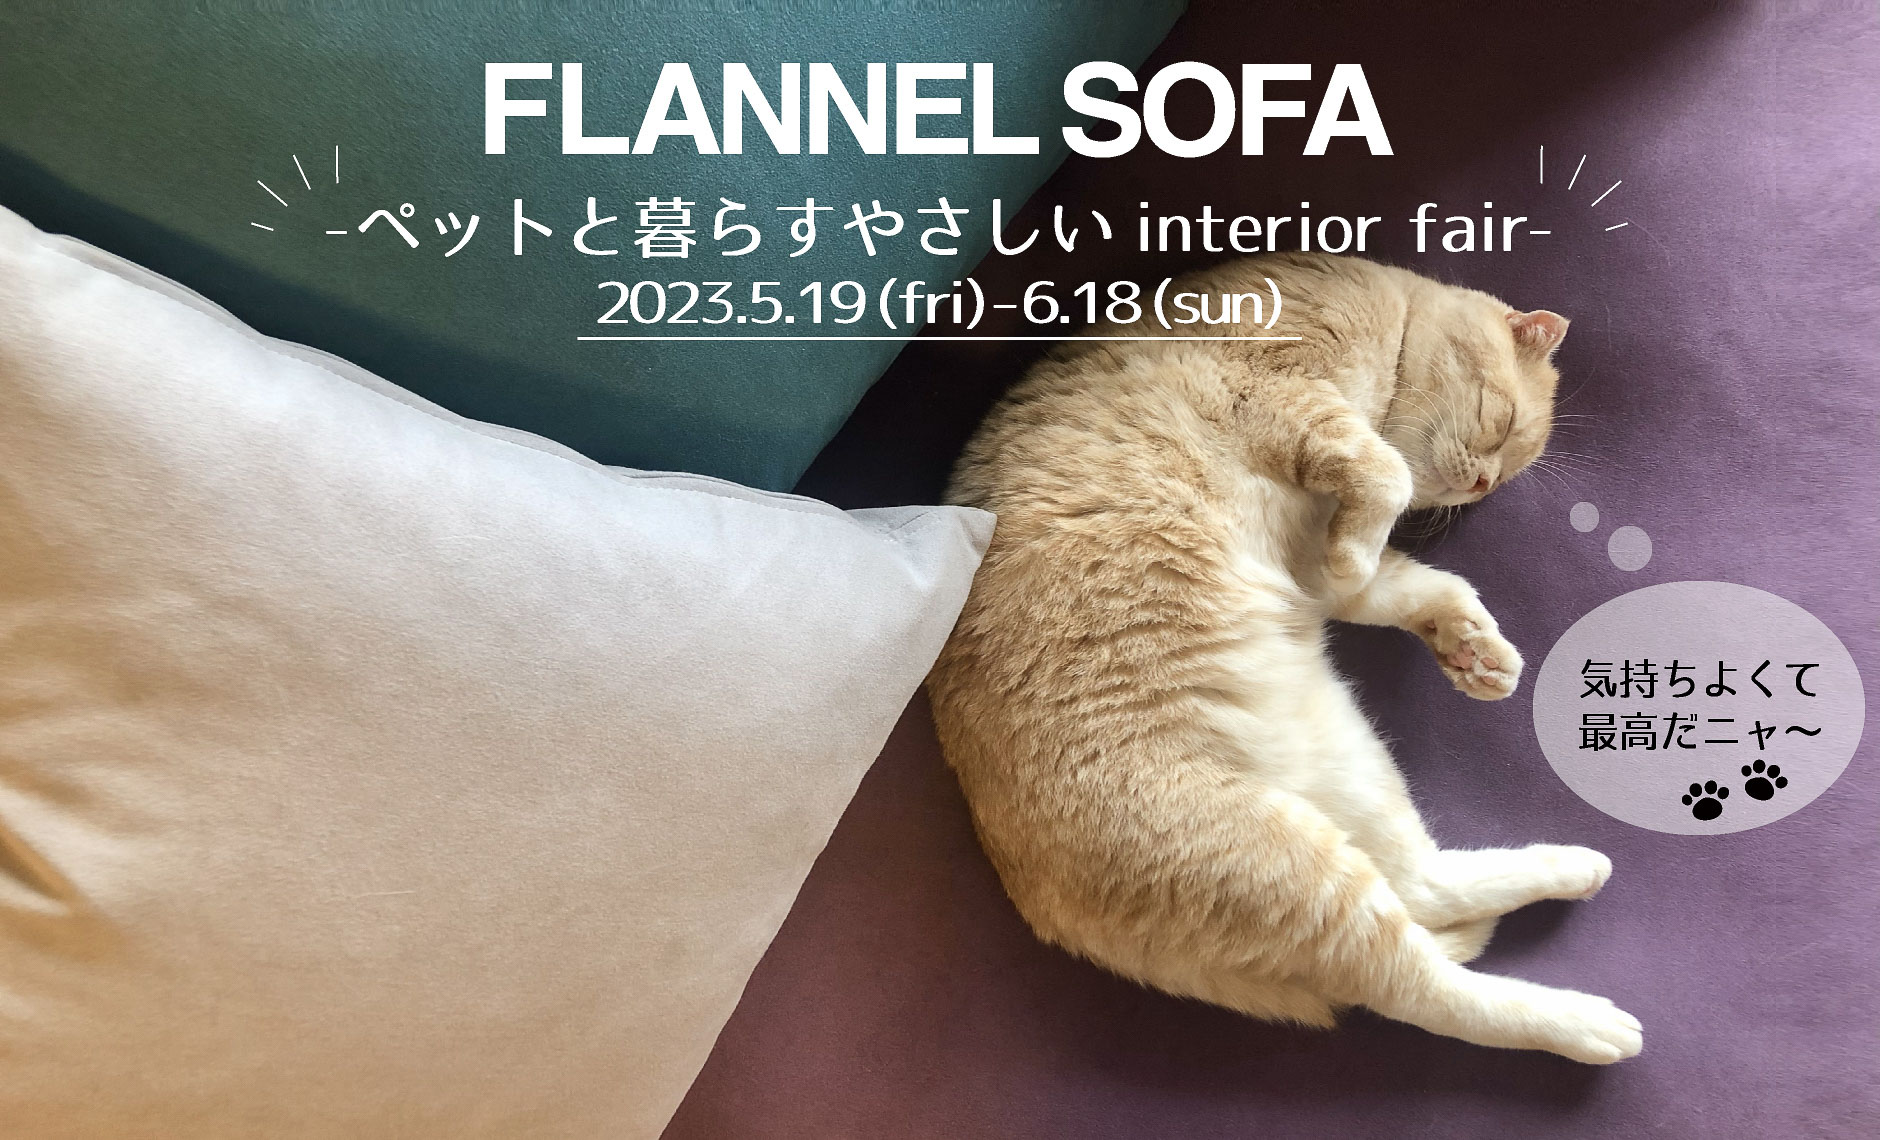 FLANNEL SOFA FAIR 2023